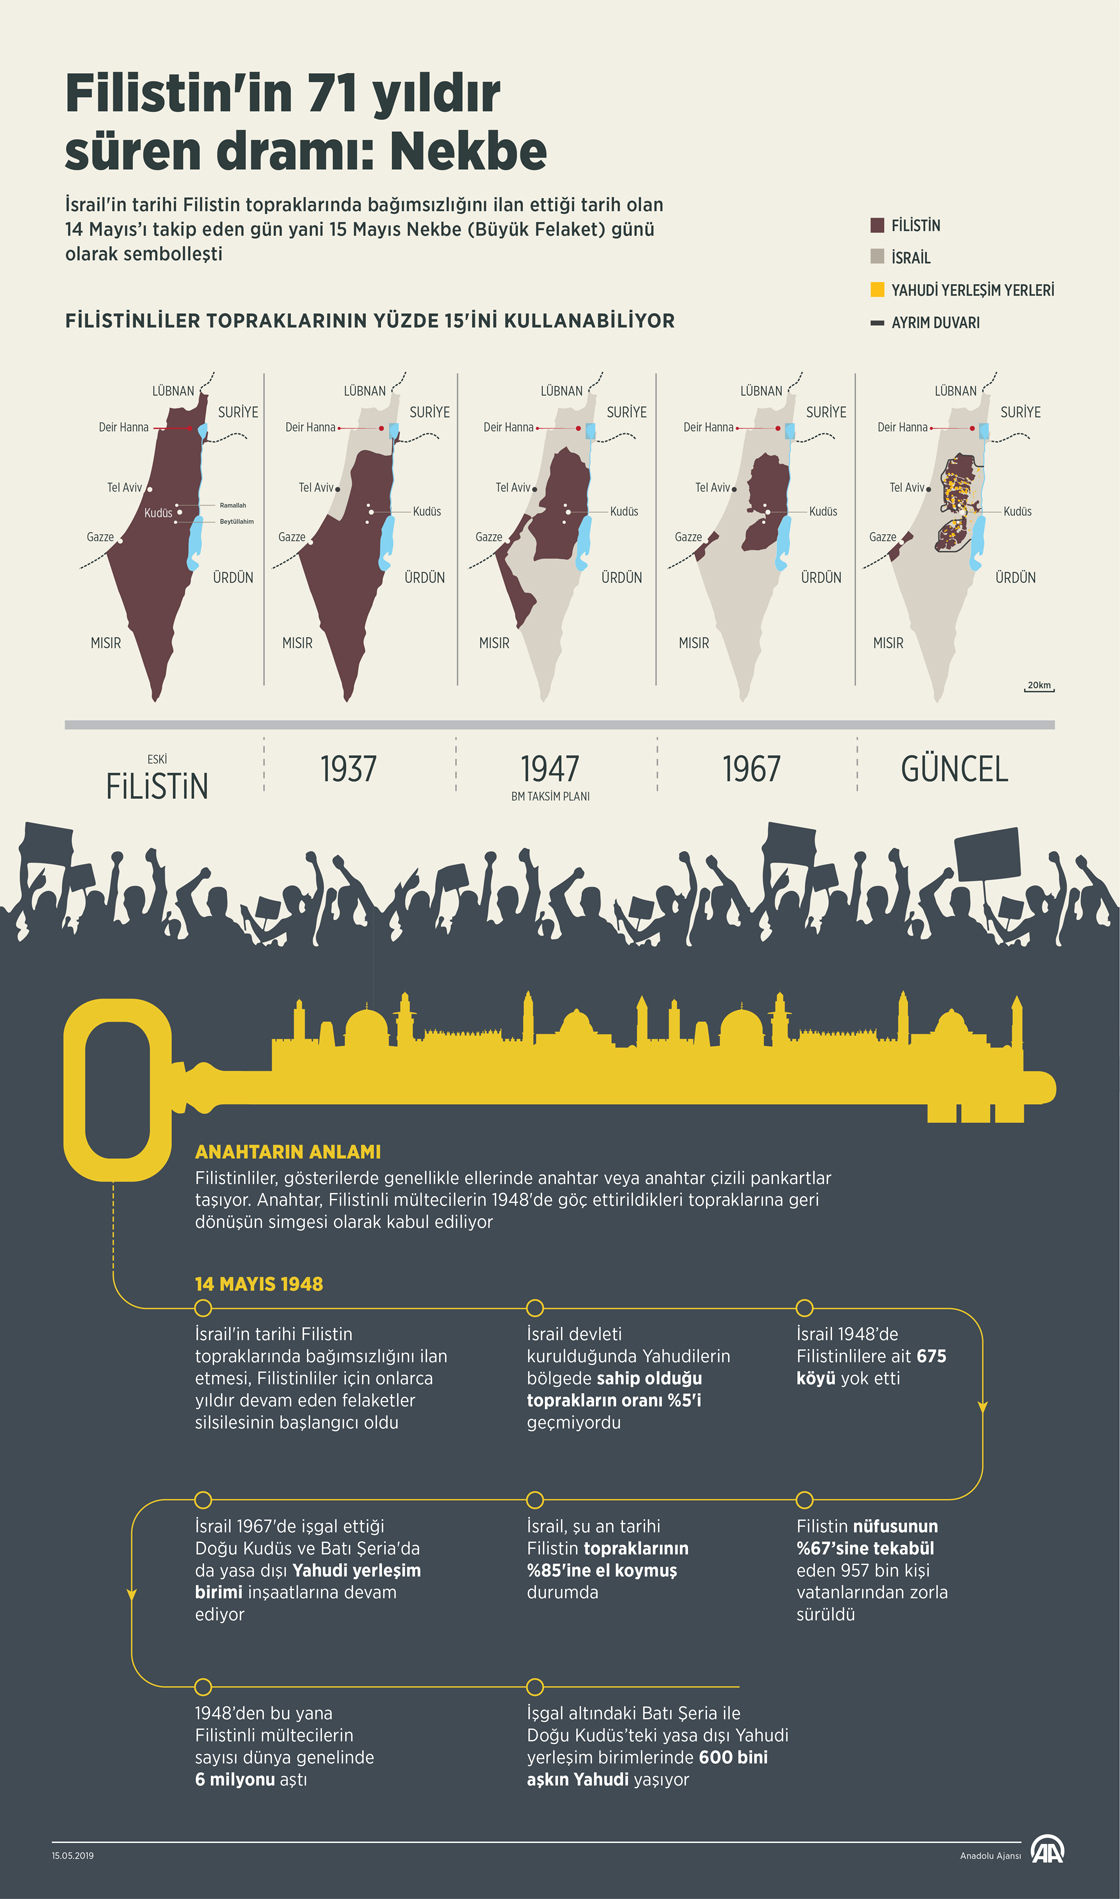 Filistin'in 71 yıldır süren dramı: Nekbe